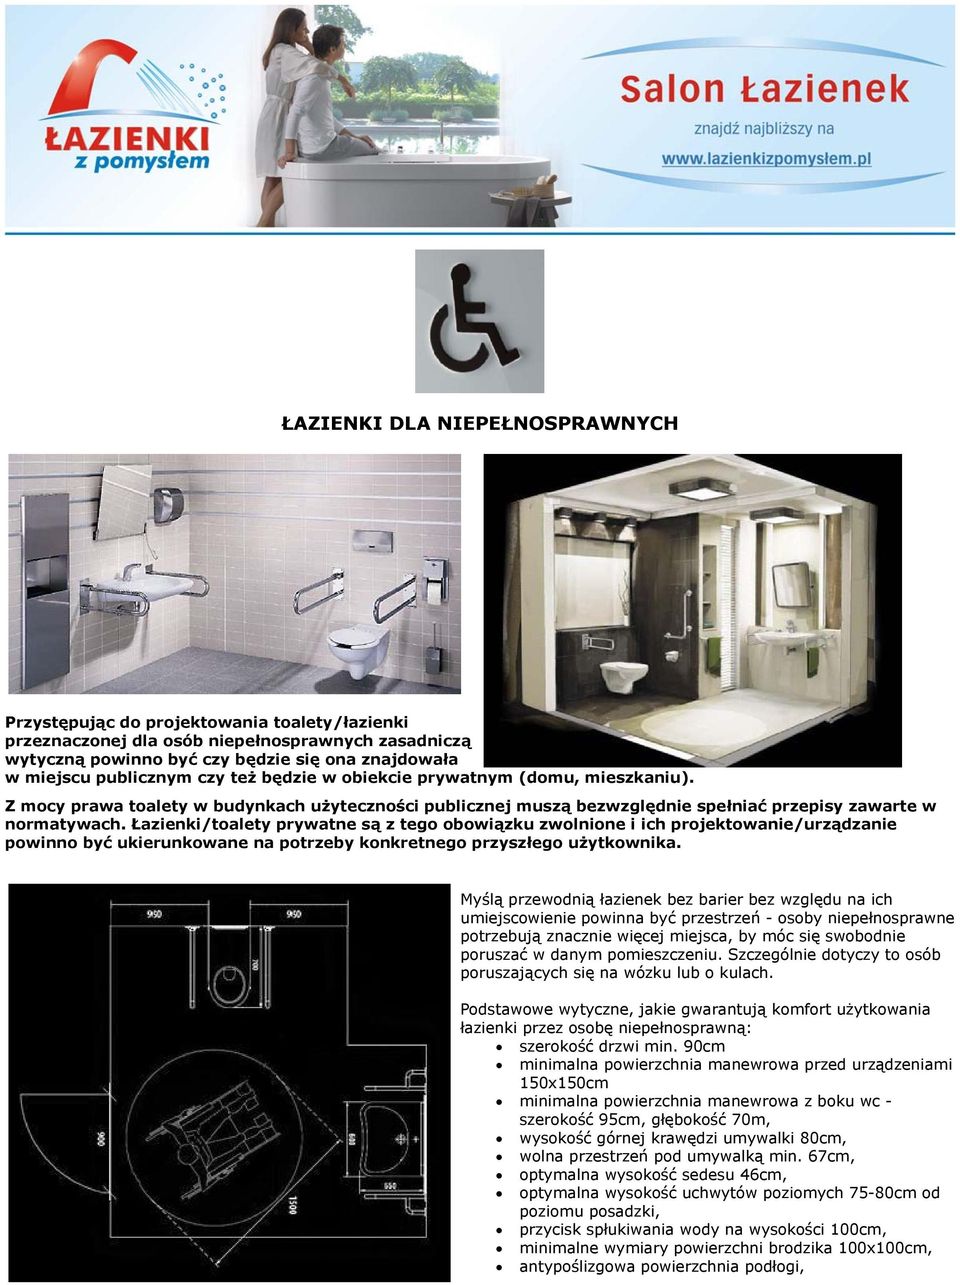 Łazienki/toalety prywatne są z tego obowiązku zwolnione i ich projektowanie/urządzanie powinno być ukierunkowane na potrzeby konkretnego przyszłego użytkownika.